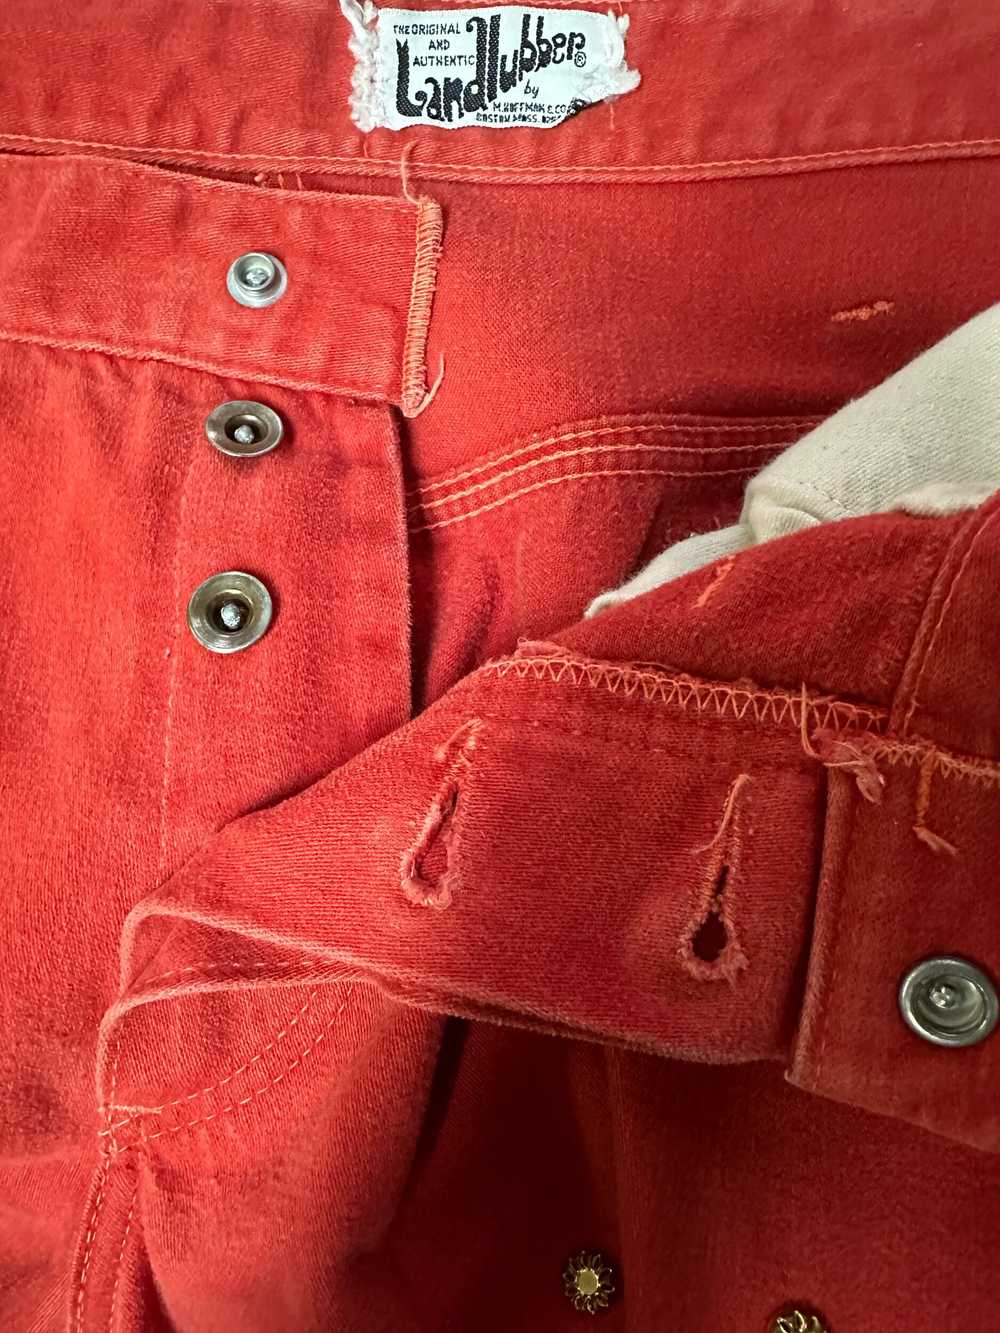 1970s Landlubber Jeans - image 8